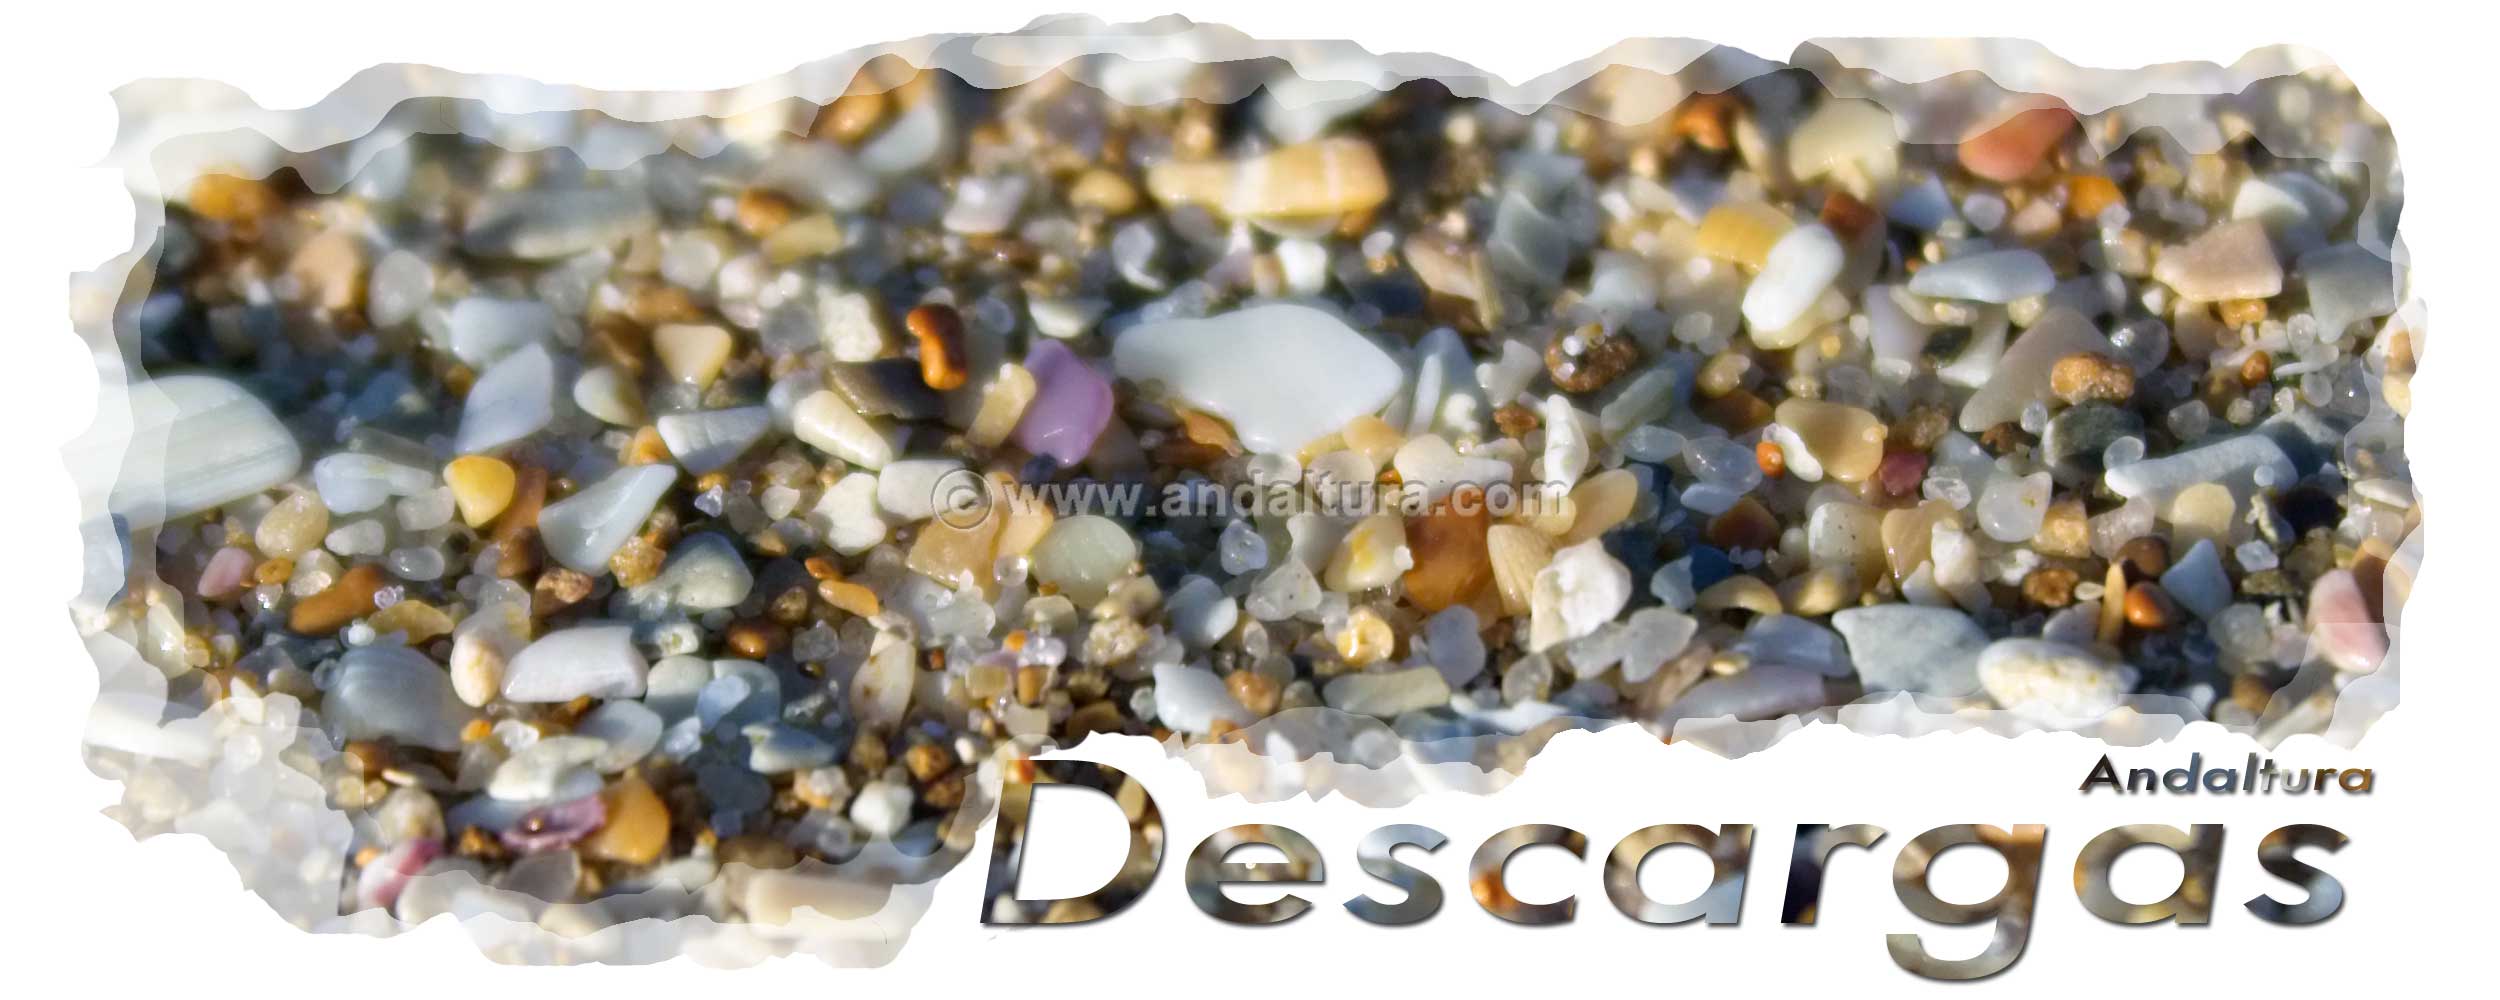 Finas piedras en las playas de Andalucía - Cabecera de la zona de descargas de archivos gratis de Andaltura